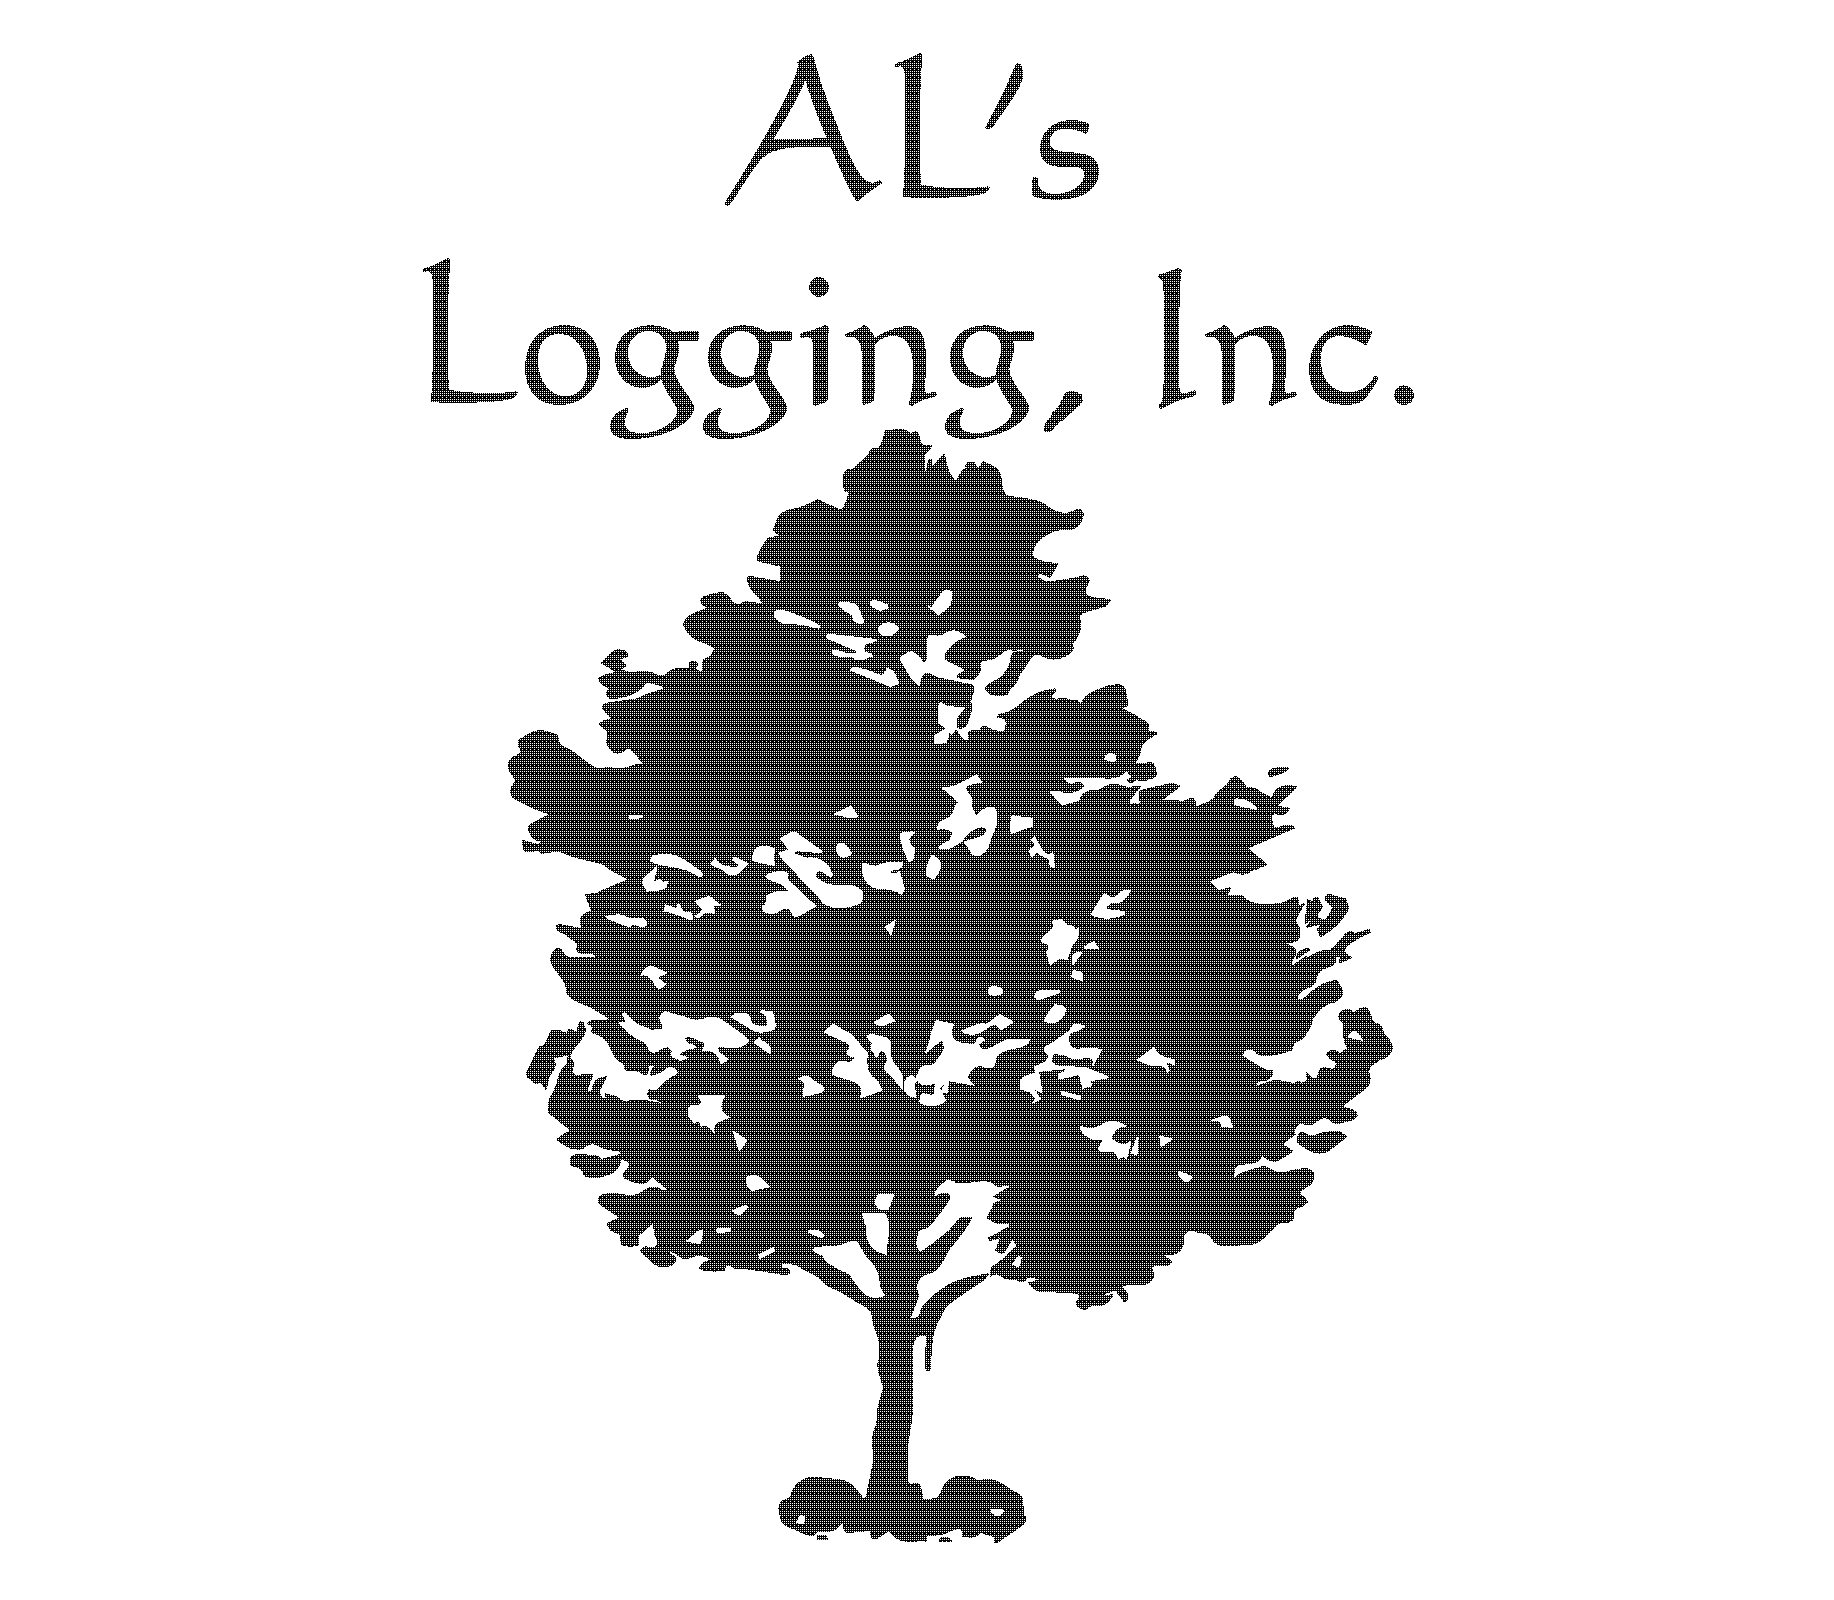 Al's Logging, Inc.